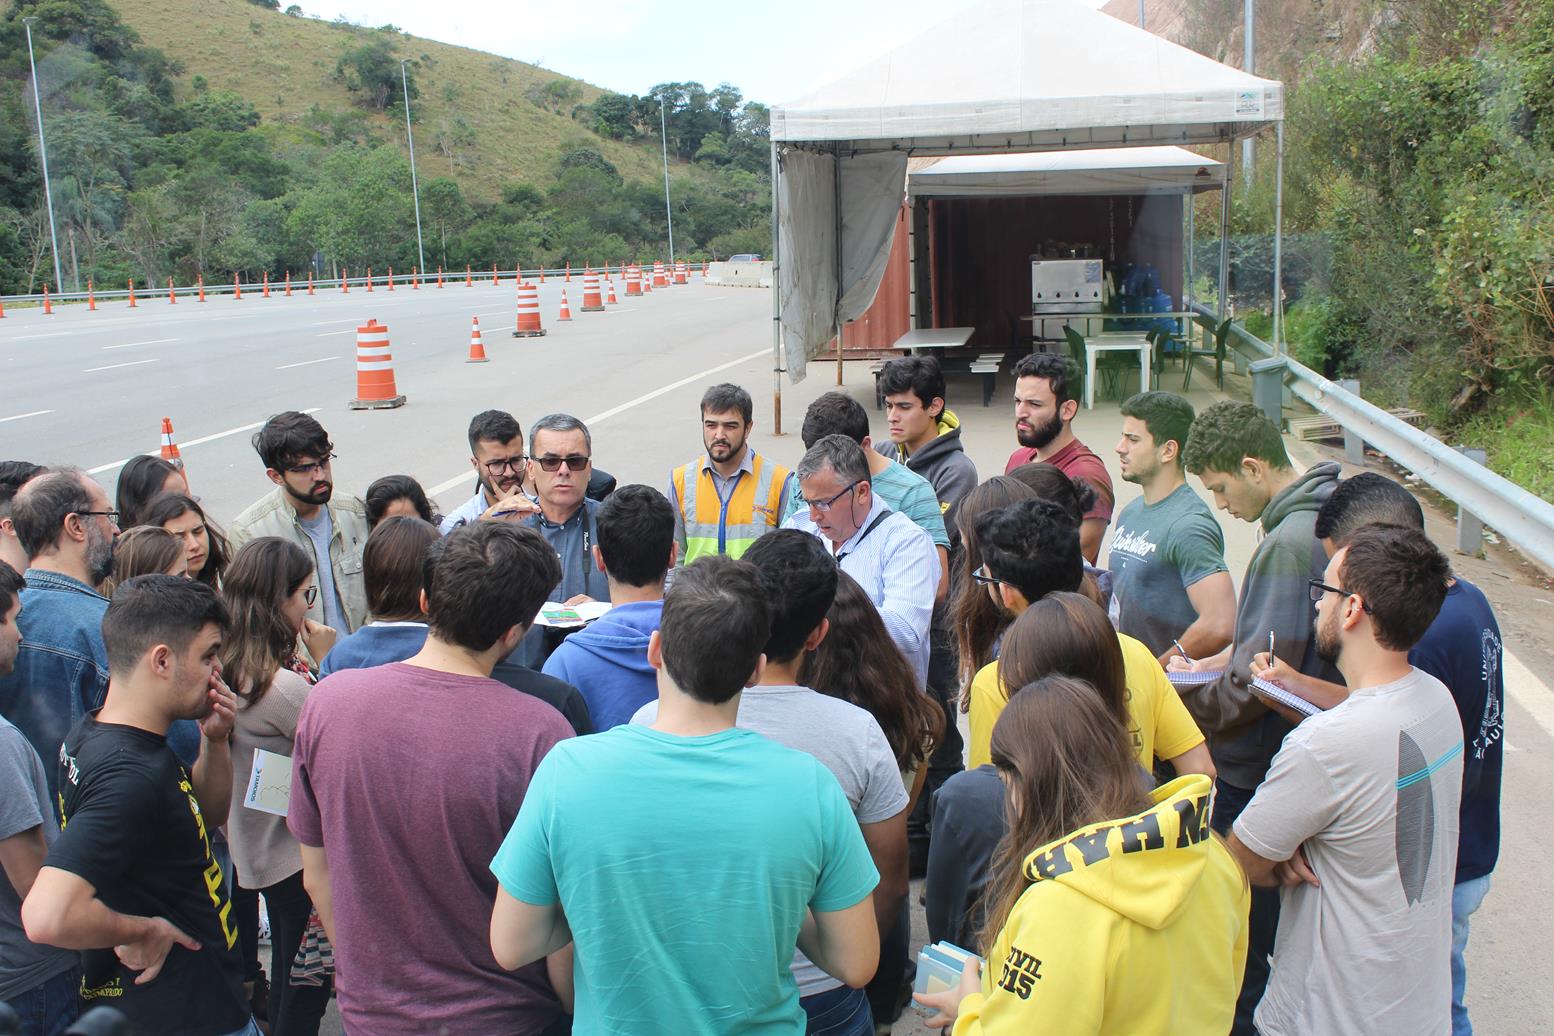 Tamoios recebe visita de alunos da Universidade São Judas Tadeu ::  Concessionária Tamoios